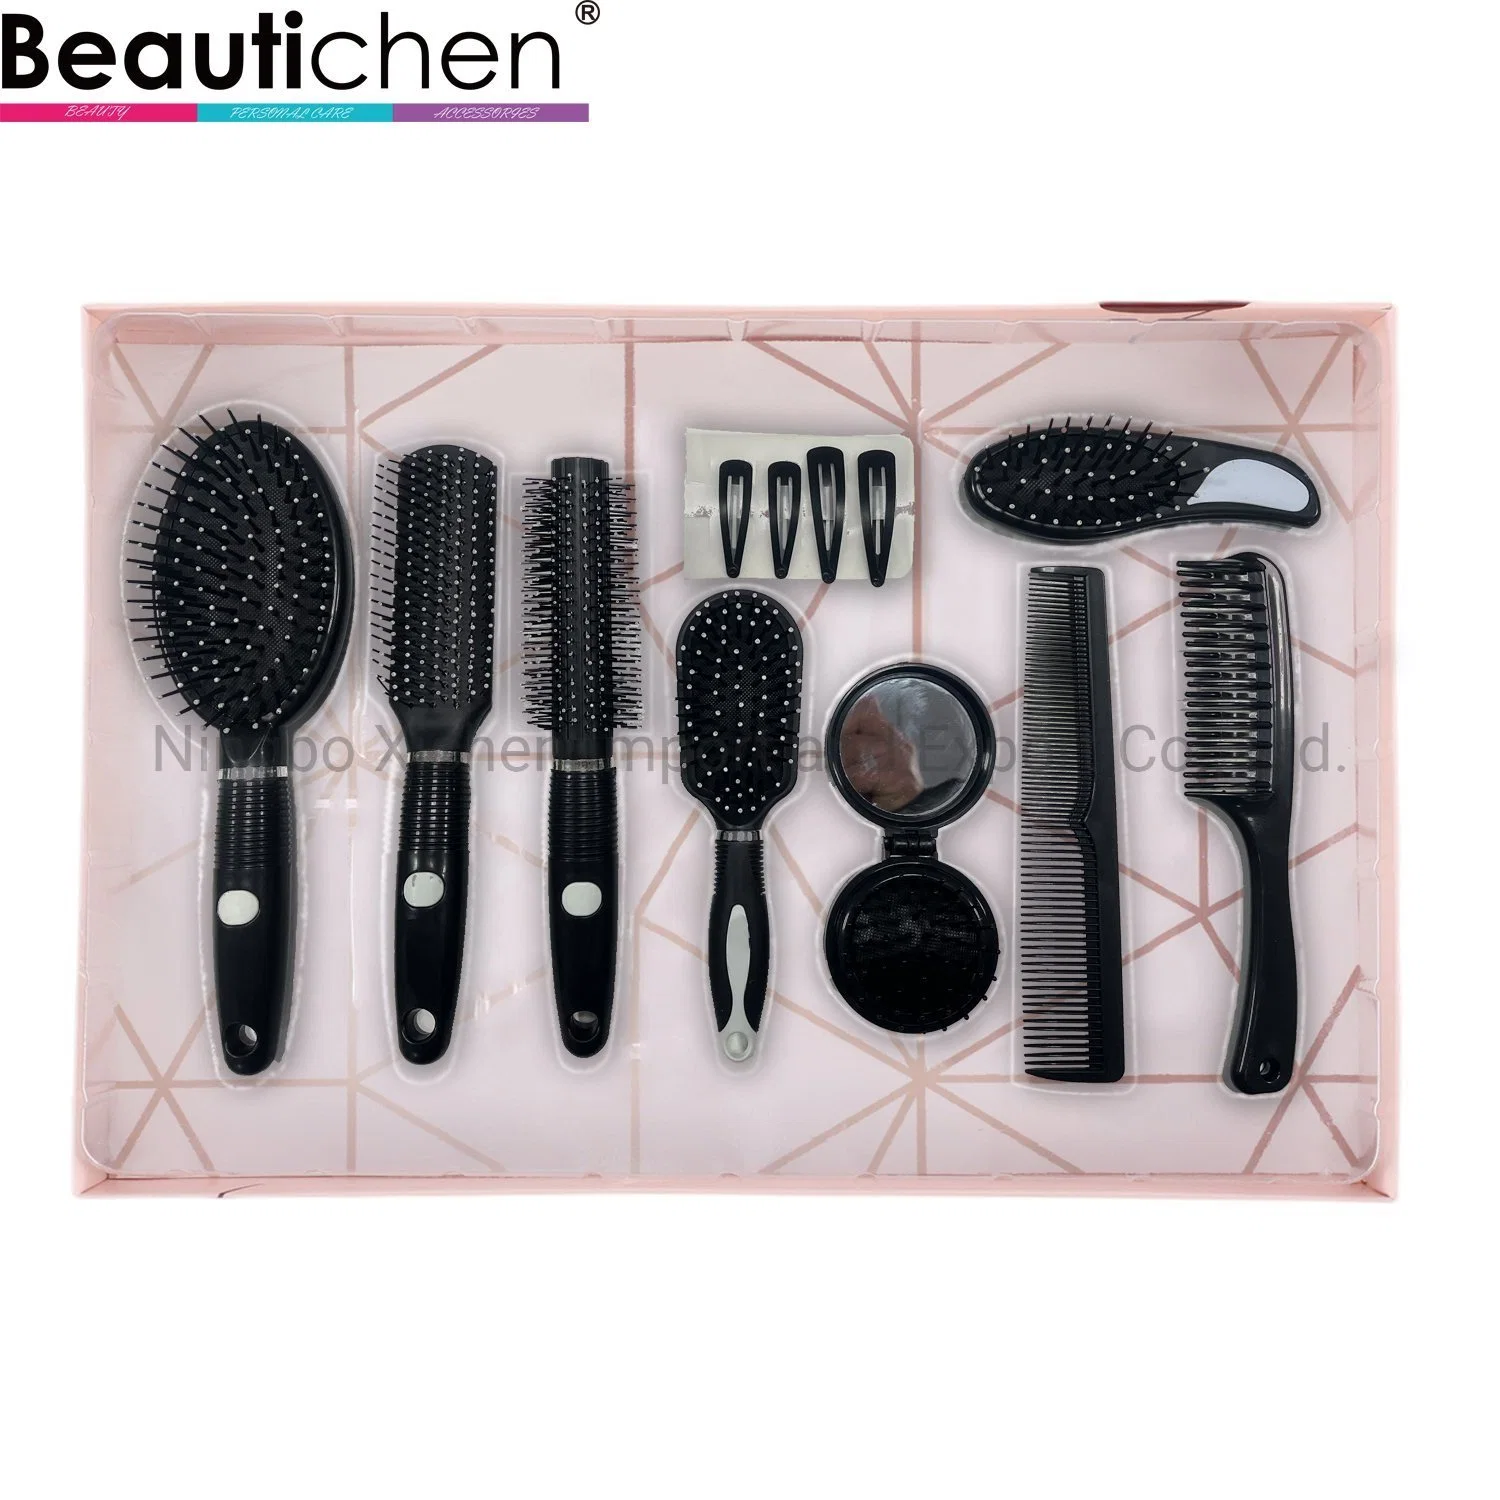 Beautichen 9 in 1 Black Hair Brush Set